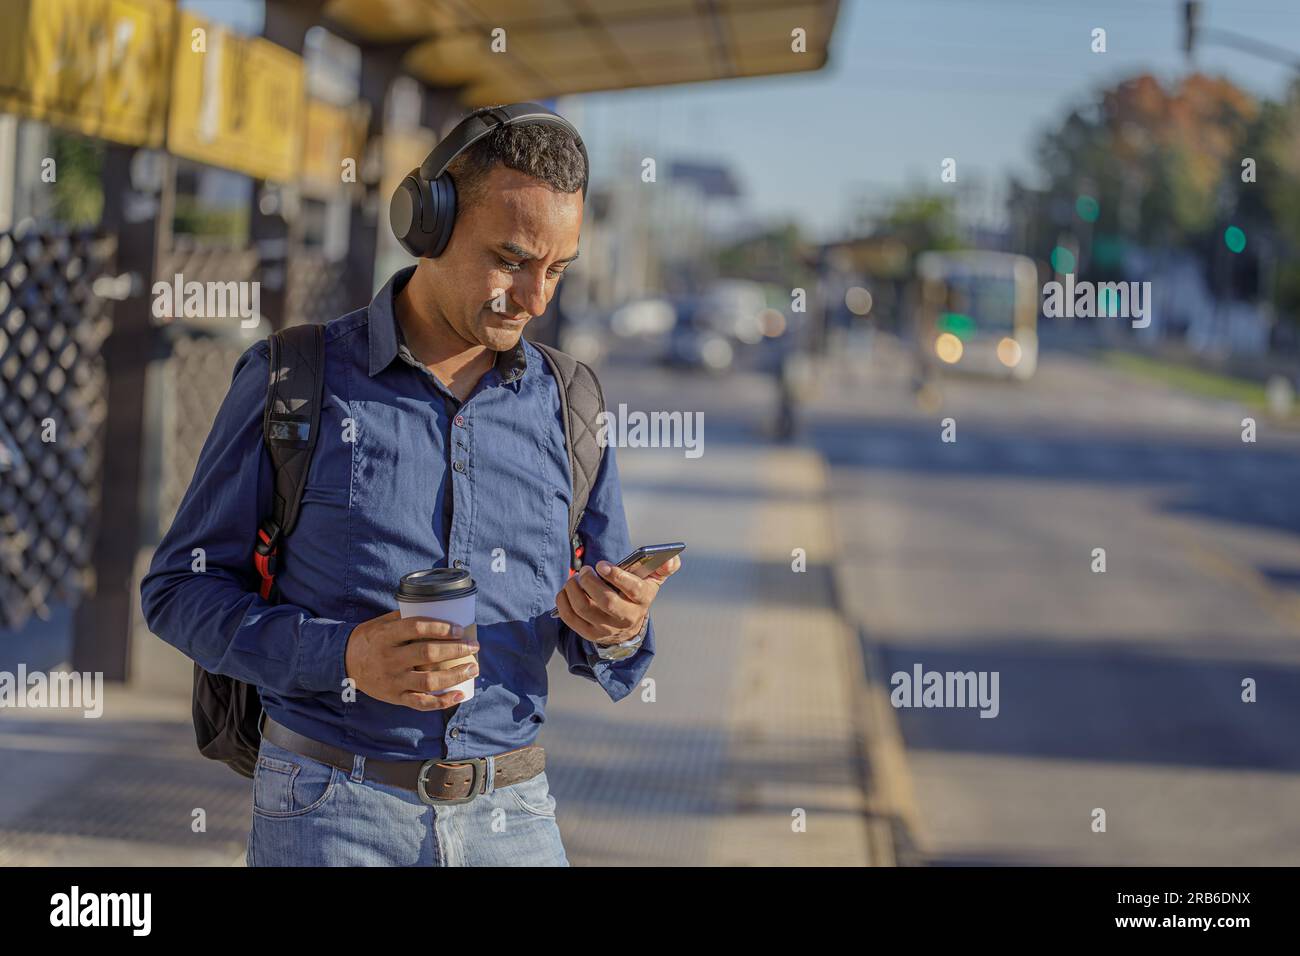 Ein junger latino mit Kopfhörern, der an der Bushaltestelle auf sein Handy schaut. Stockfoto